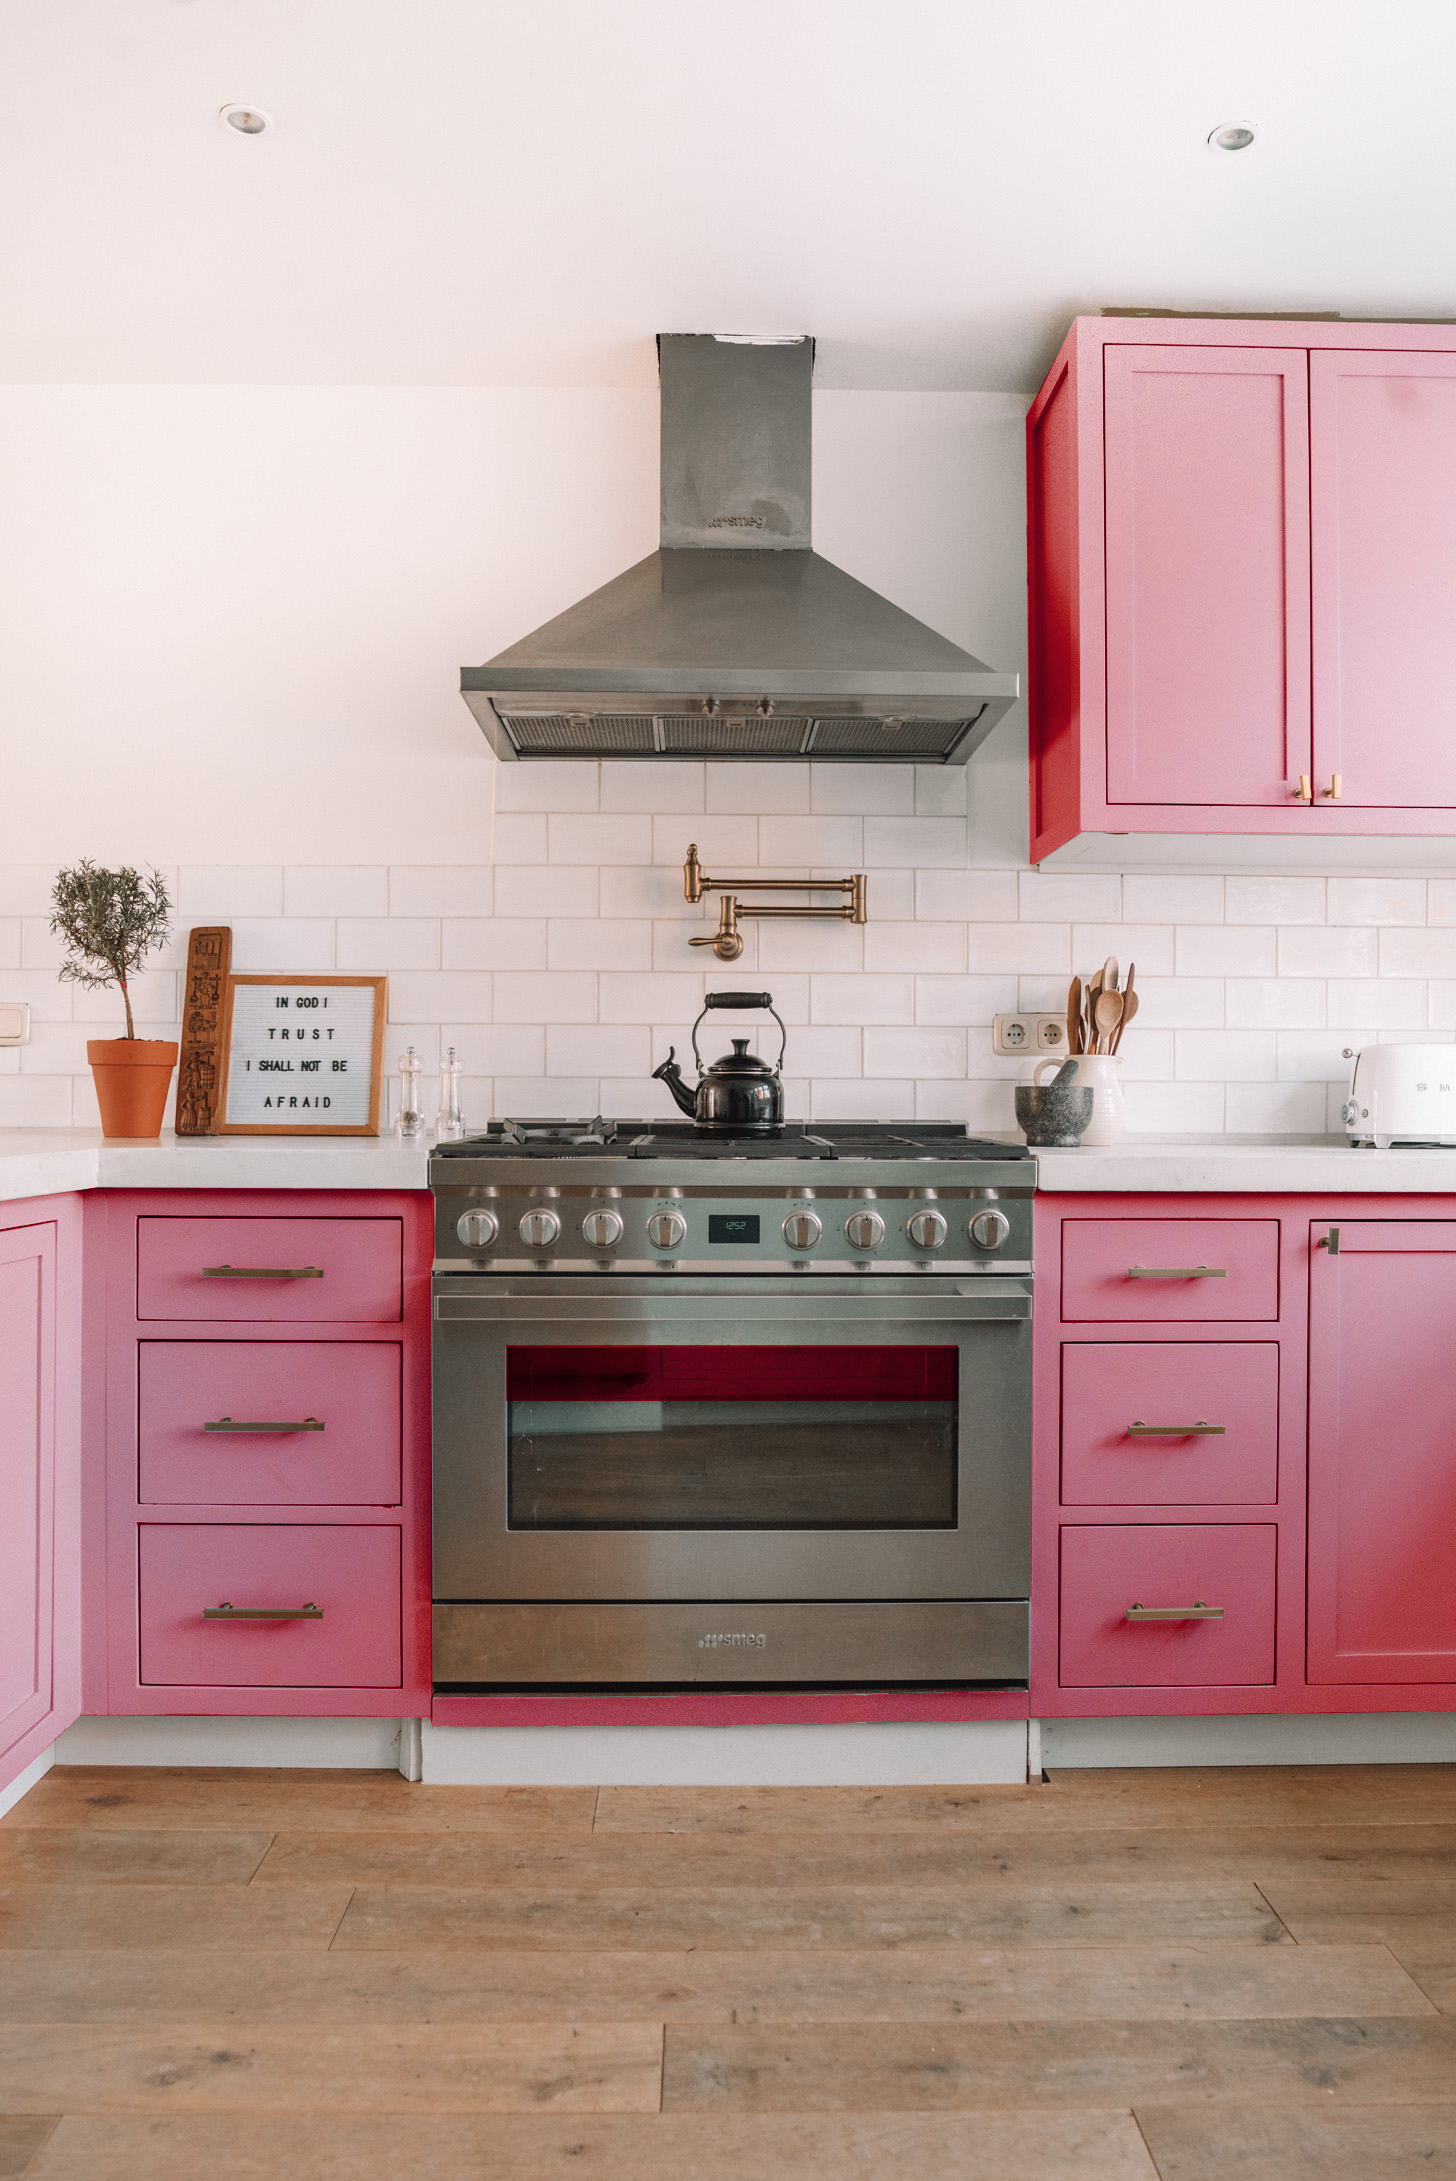 Lada amplitude hand Onze keuken in een nieuwe kleur! | A Cup of Life